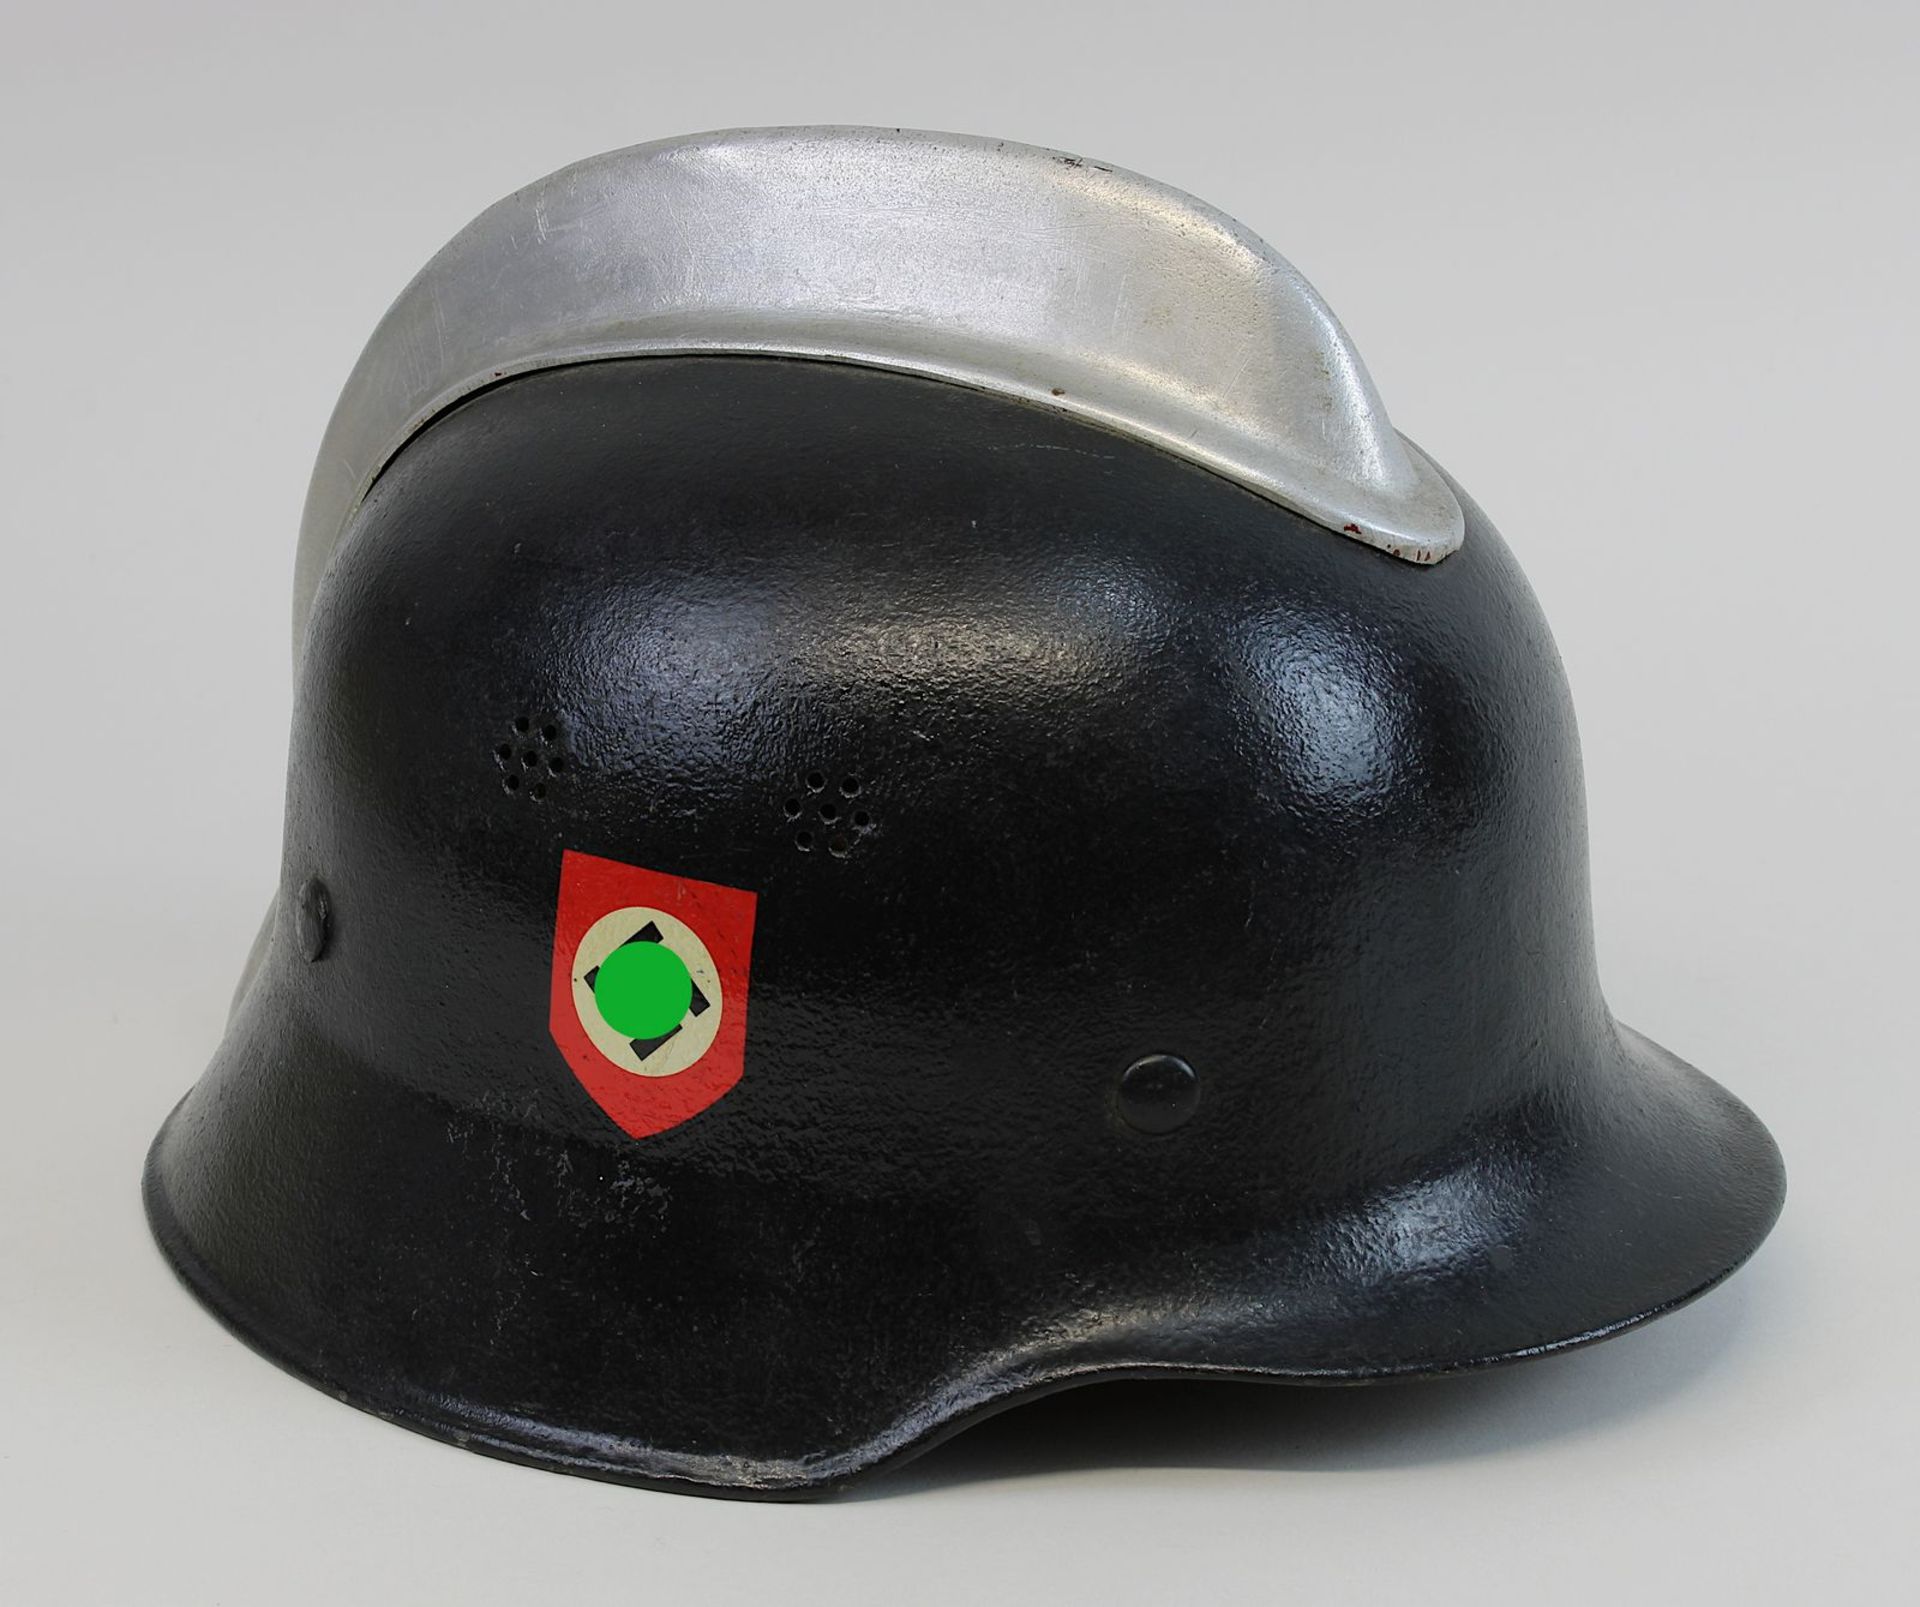 Helm der Feuerschutzpolizei, Deutsches Reich 1933 - 1945, M34, alte Glocke aus Stahl, schwarz - Image 2 of 3